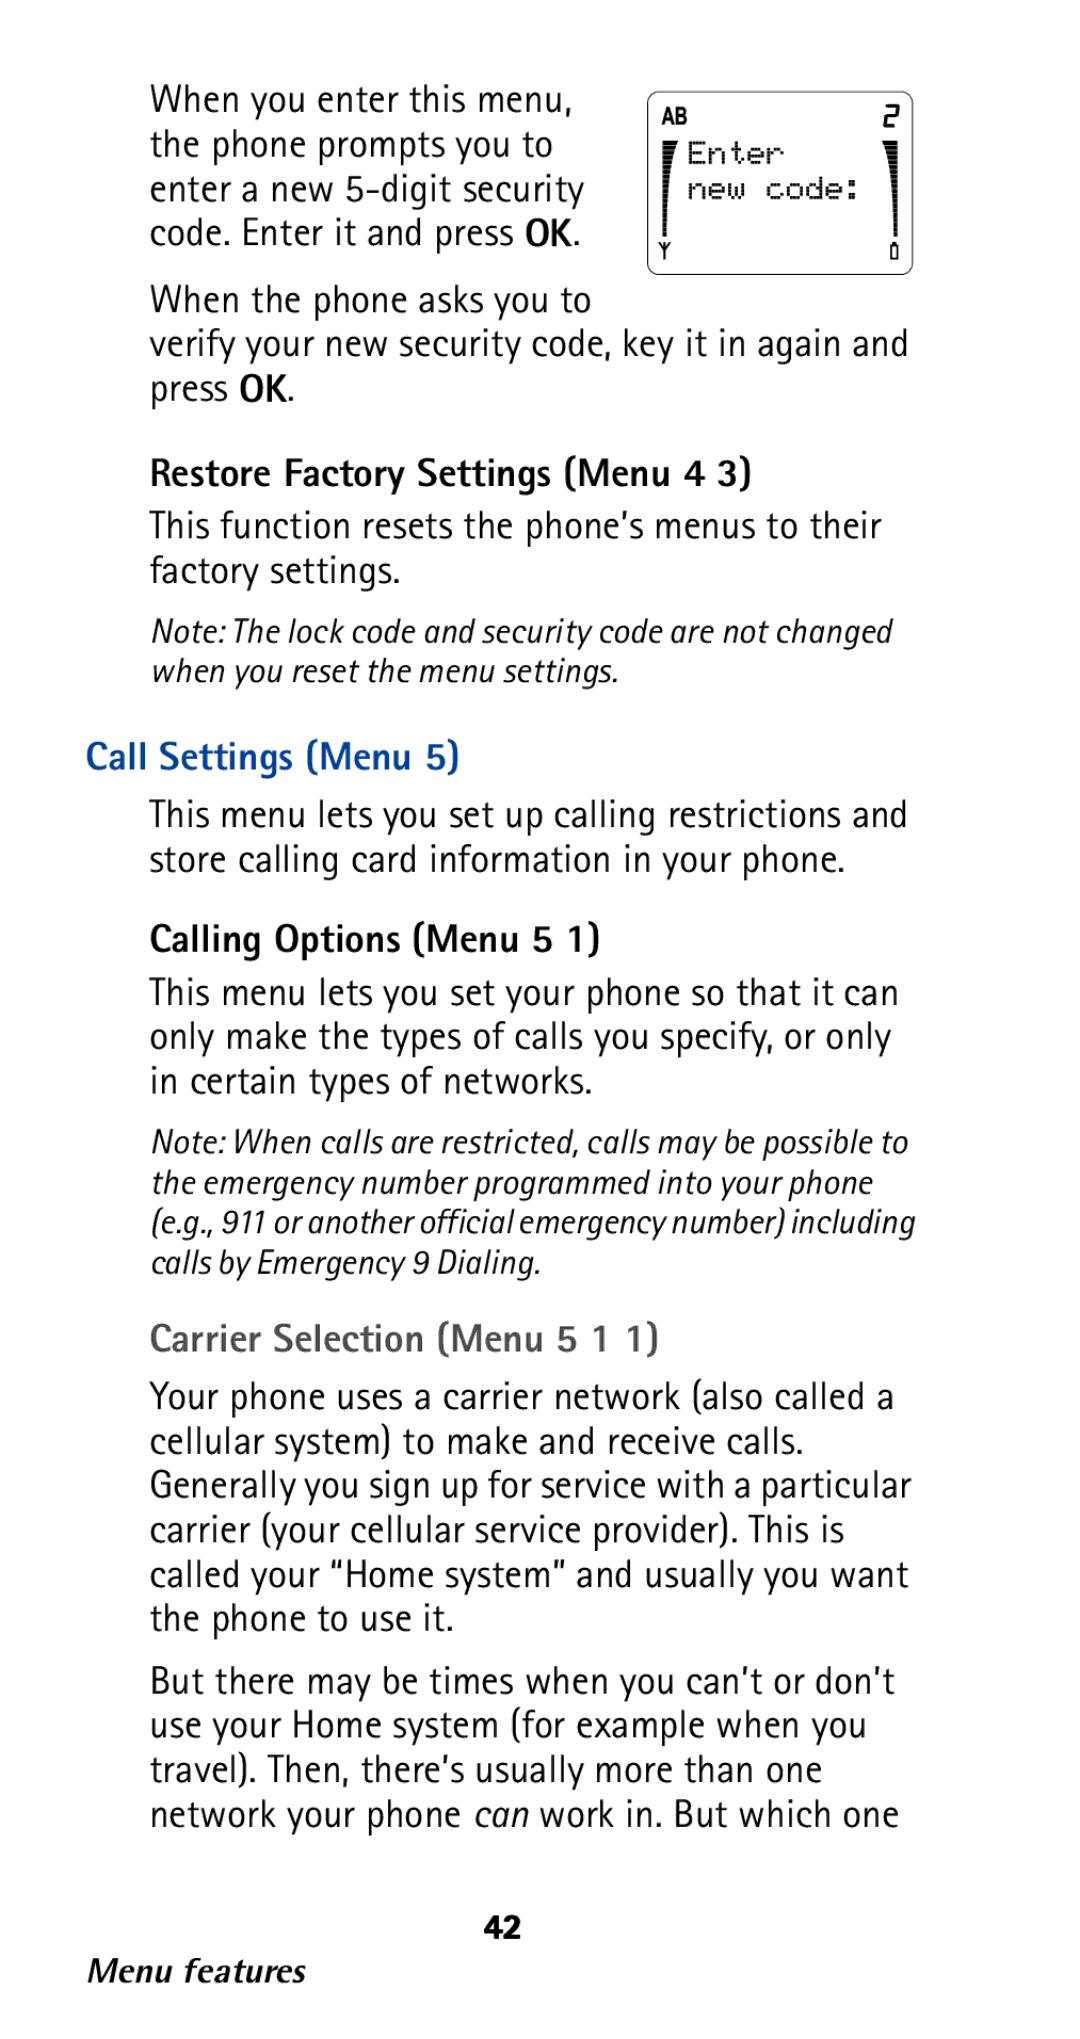 Nokia 282 Restore Factory Settings Menu 4, Call Settings Menu, Calling Options Menu 5, Carrier Selection Menu 5 1 